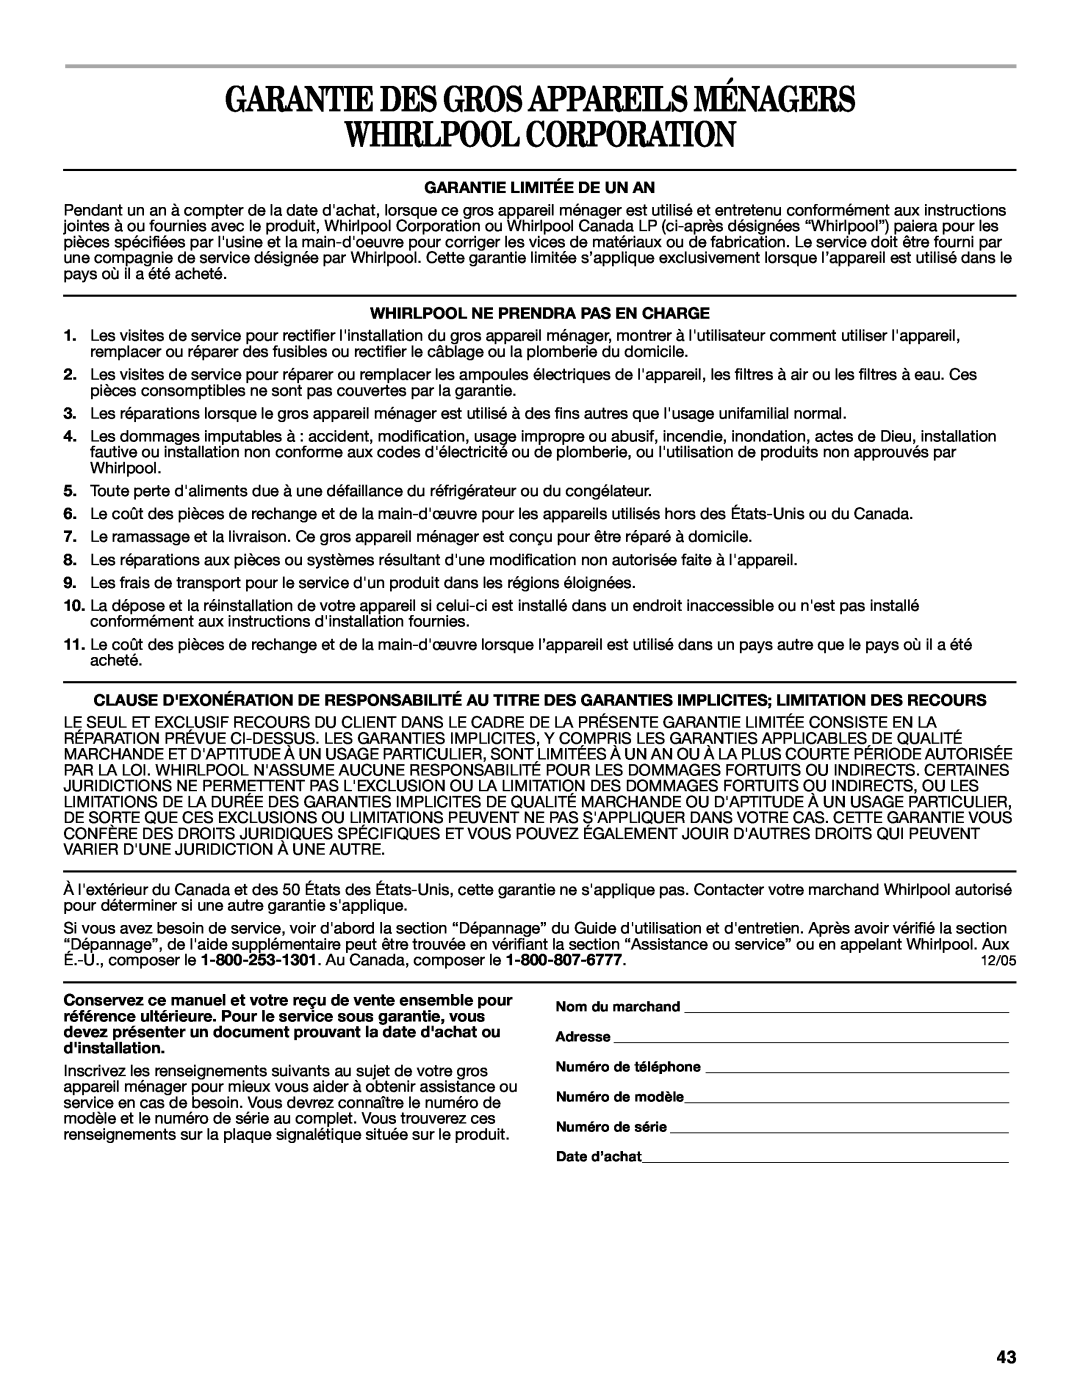 Whirlpool DP940PWS manual Garantie Des Gros Appareils Ménagers Whirlpool Corporation, Garantie Limitée De Un An 